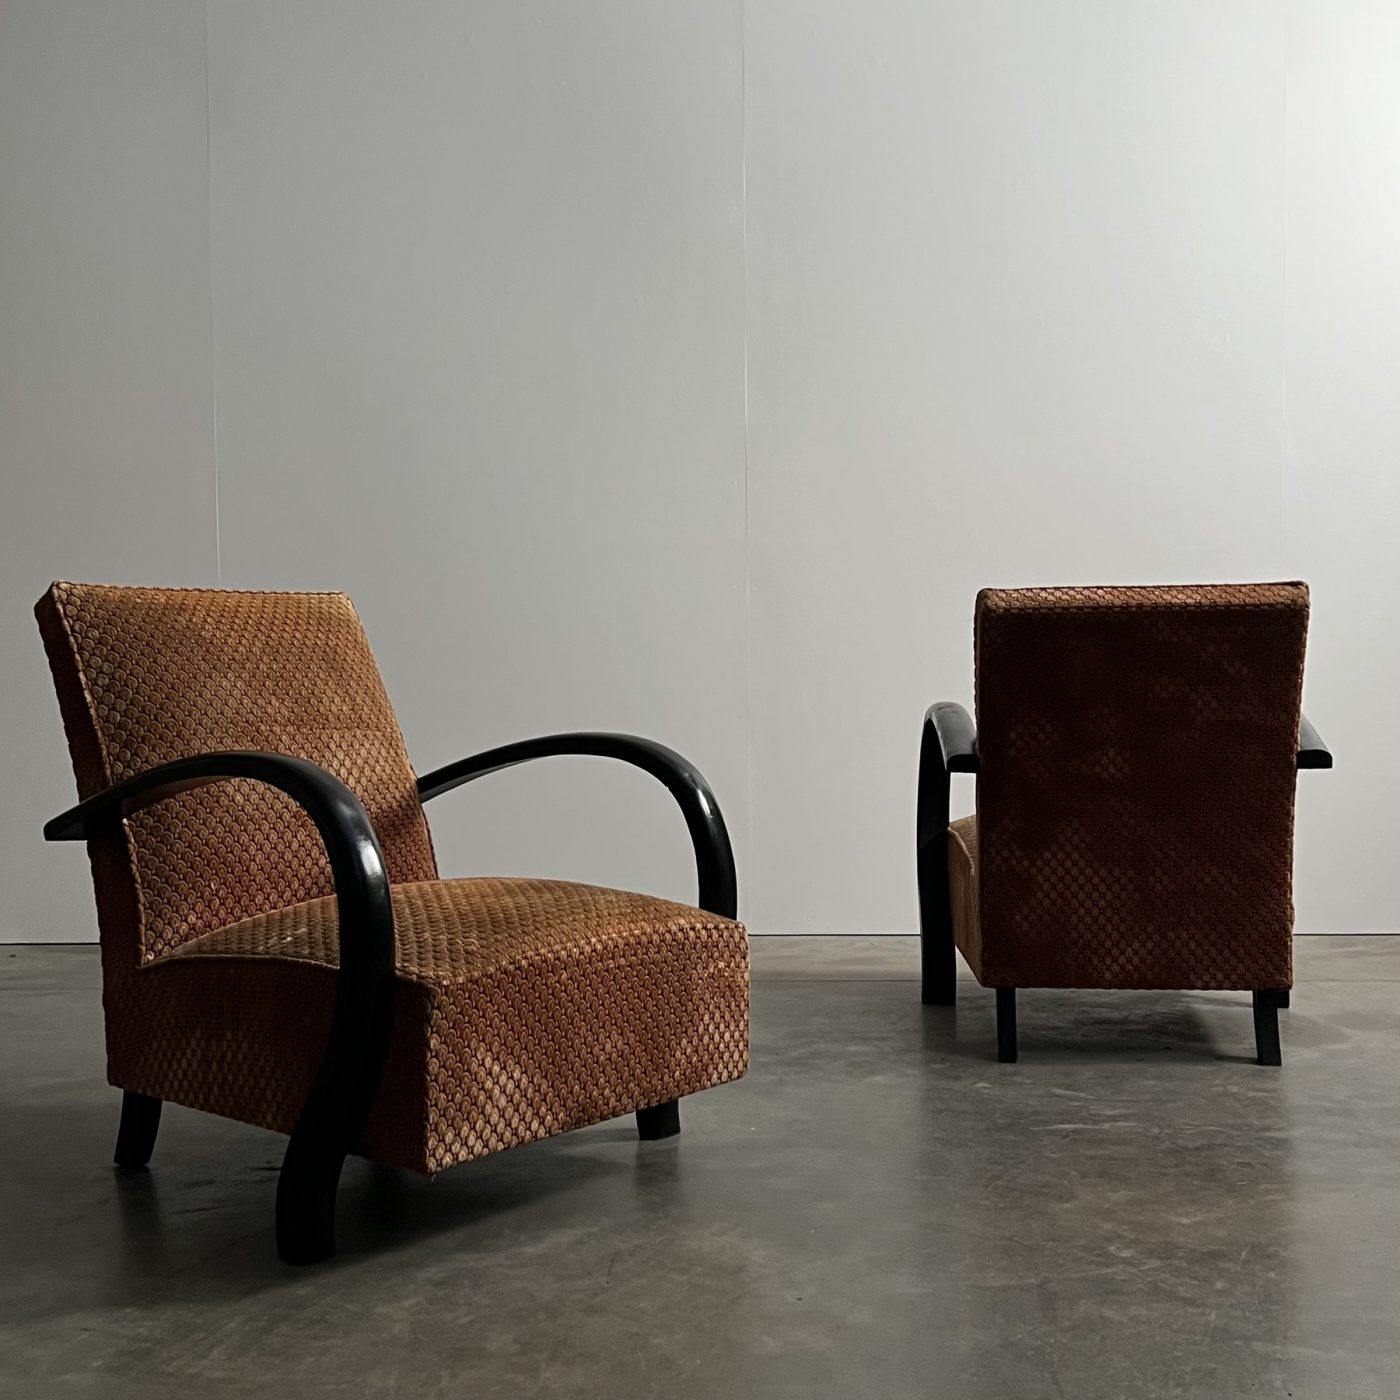 objet-vagabond-artdeco-armchairs0006